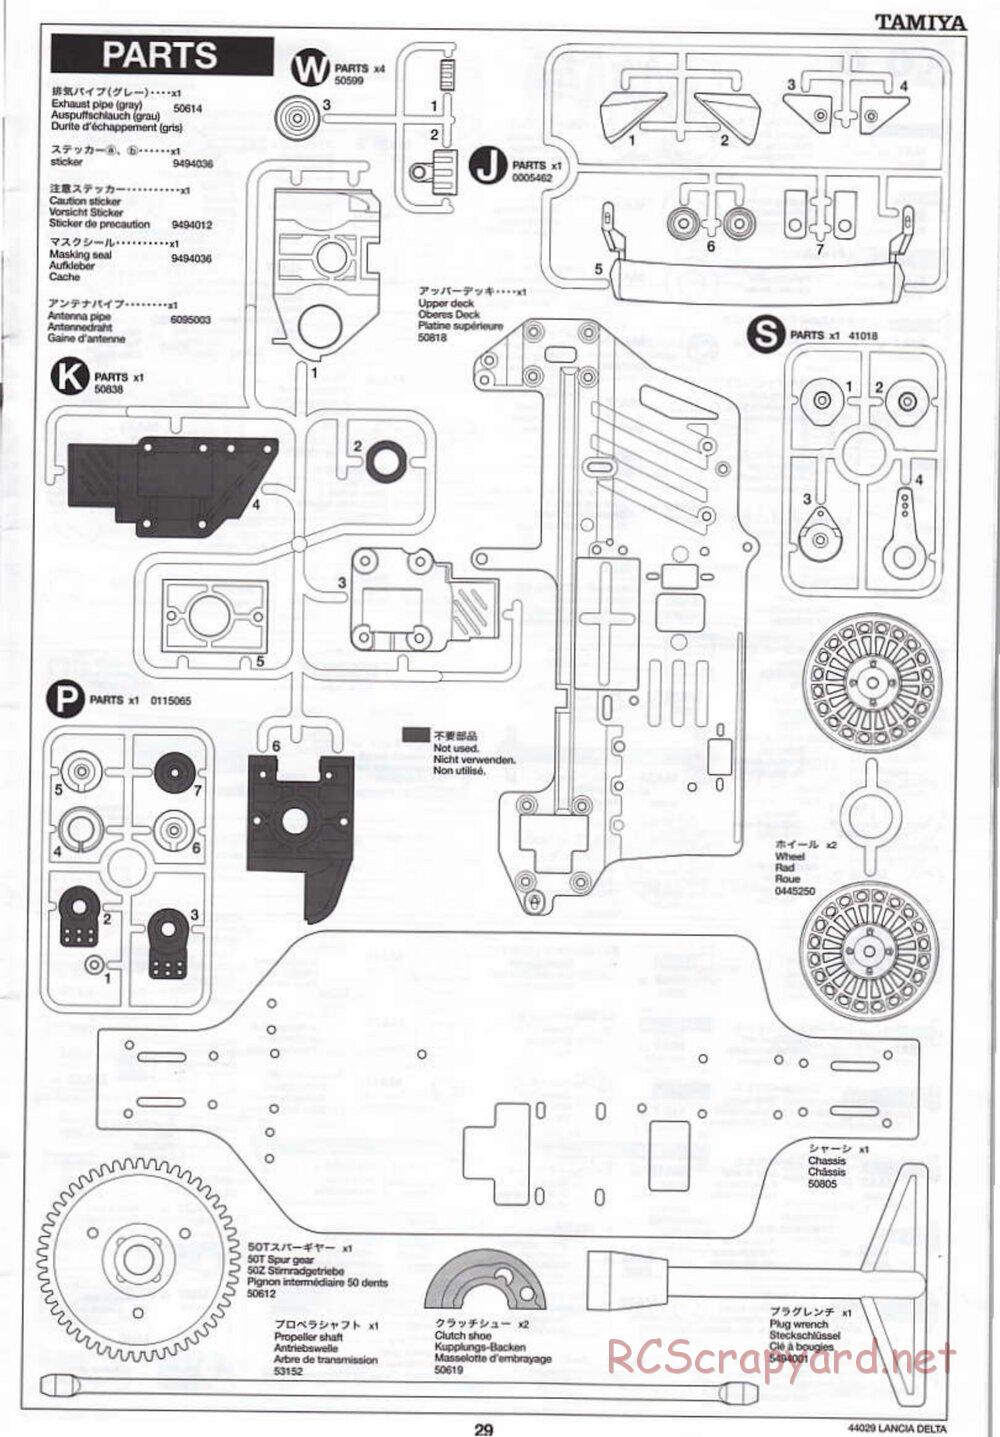 Tamiya - Lancia Delta HF Integrale - TG10 Mk.1 Chassis - Manual - Page 29